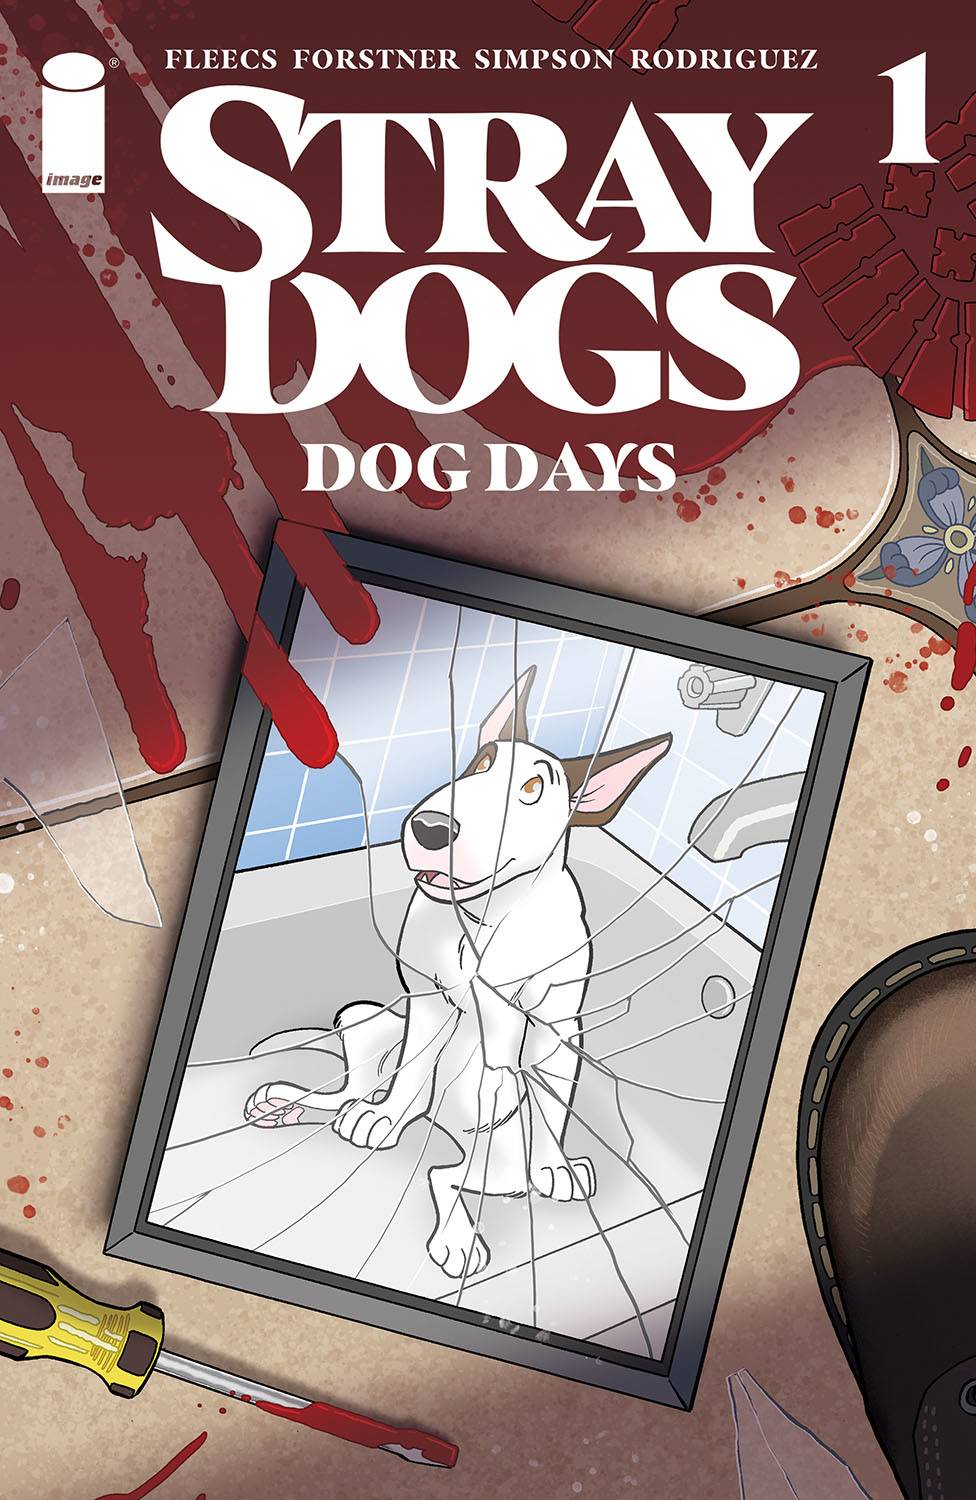 12/29/2021 STRAY DOGS DOG DAYS #1 (OF 2) CVR A FORSTNER & FLEECS